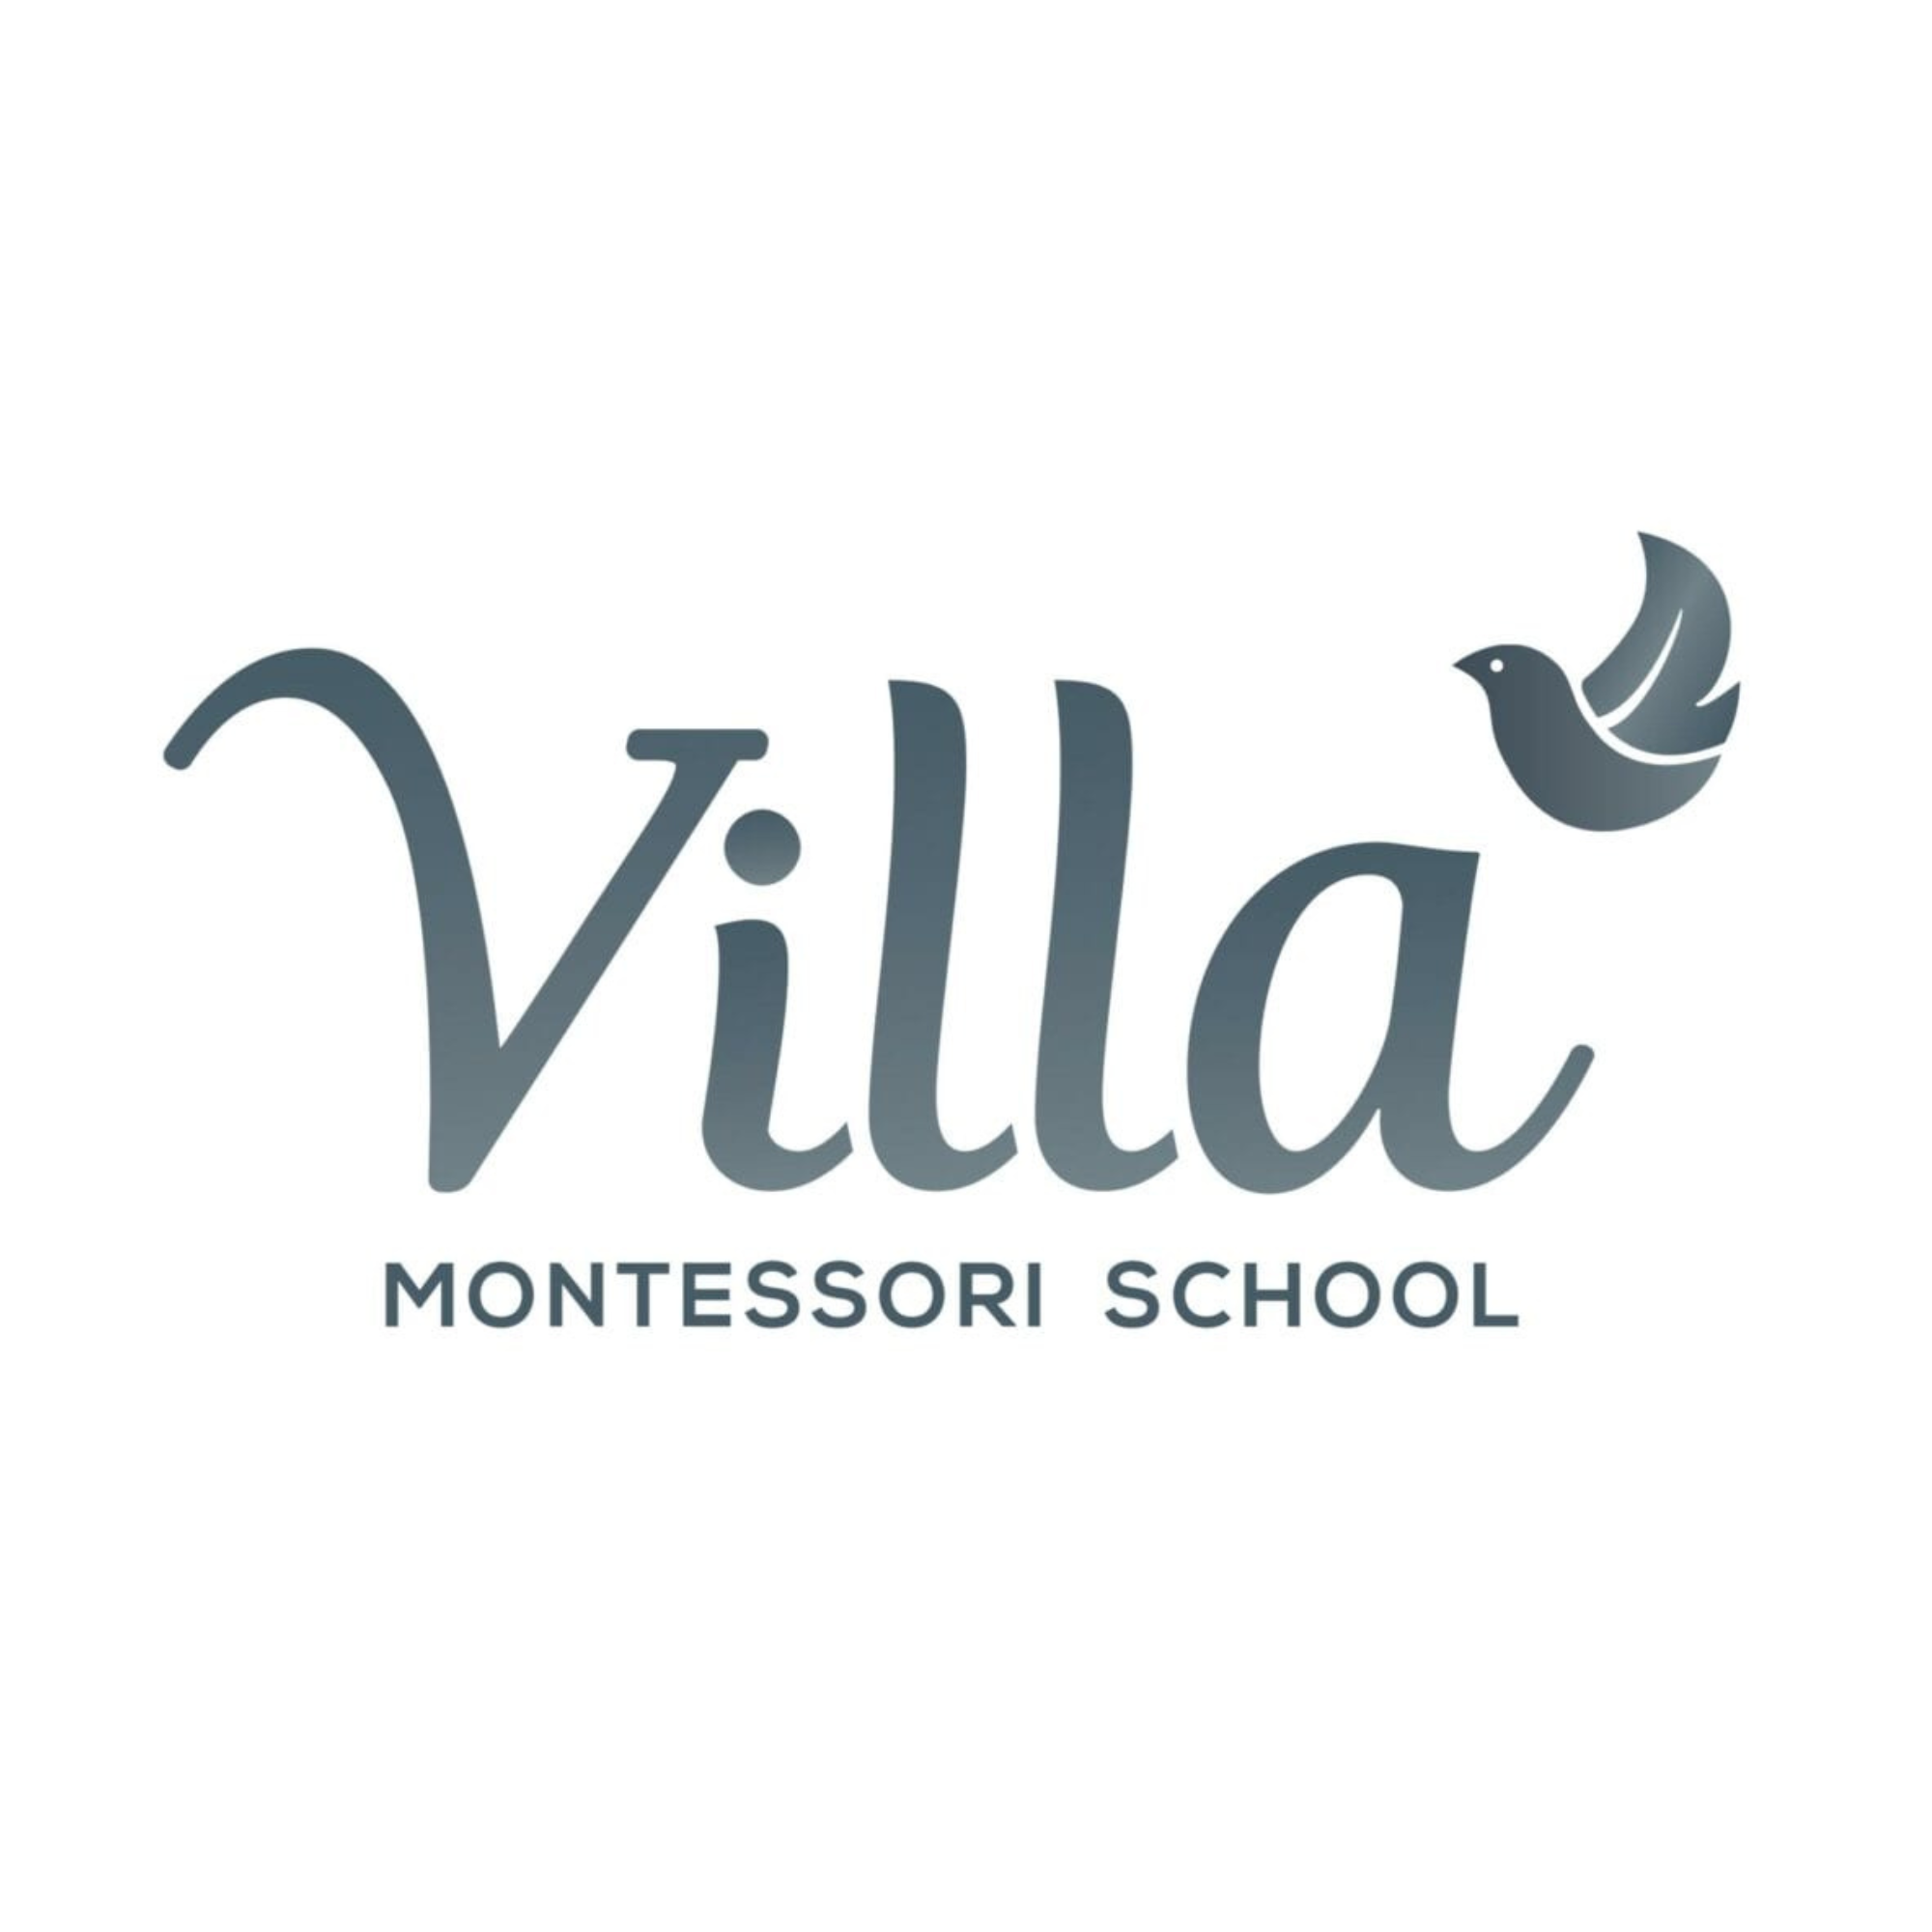 Vialla Montessori School